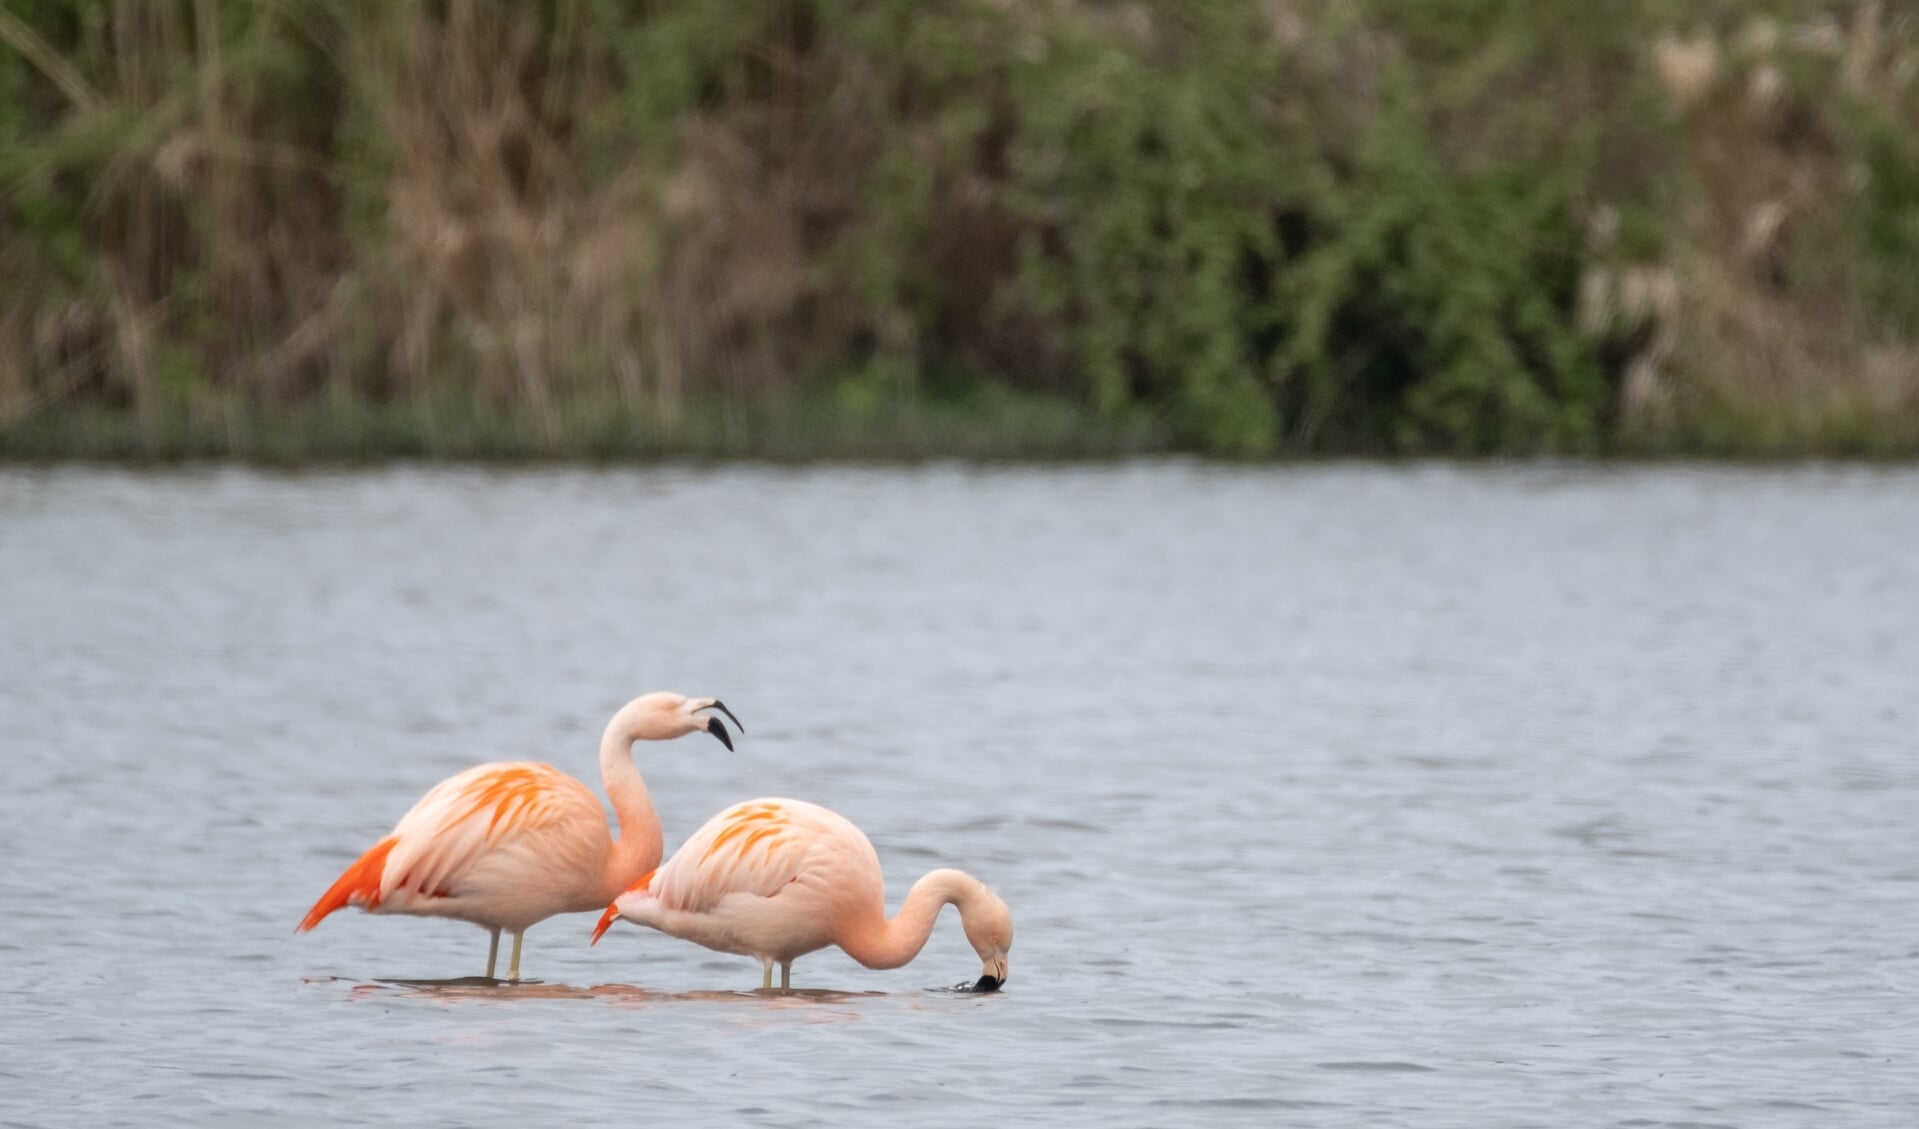 Twee flamingo's in Drempt; met die karakteristieke manier van eten, door het water te filteren met hun grote snavel. Foto: Burry van den Brink